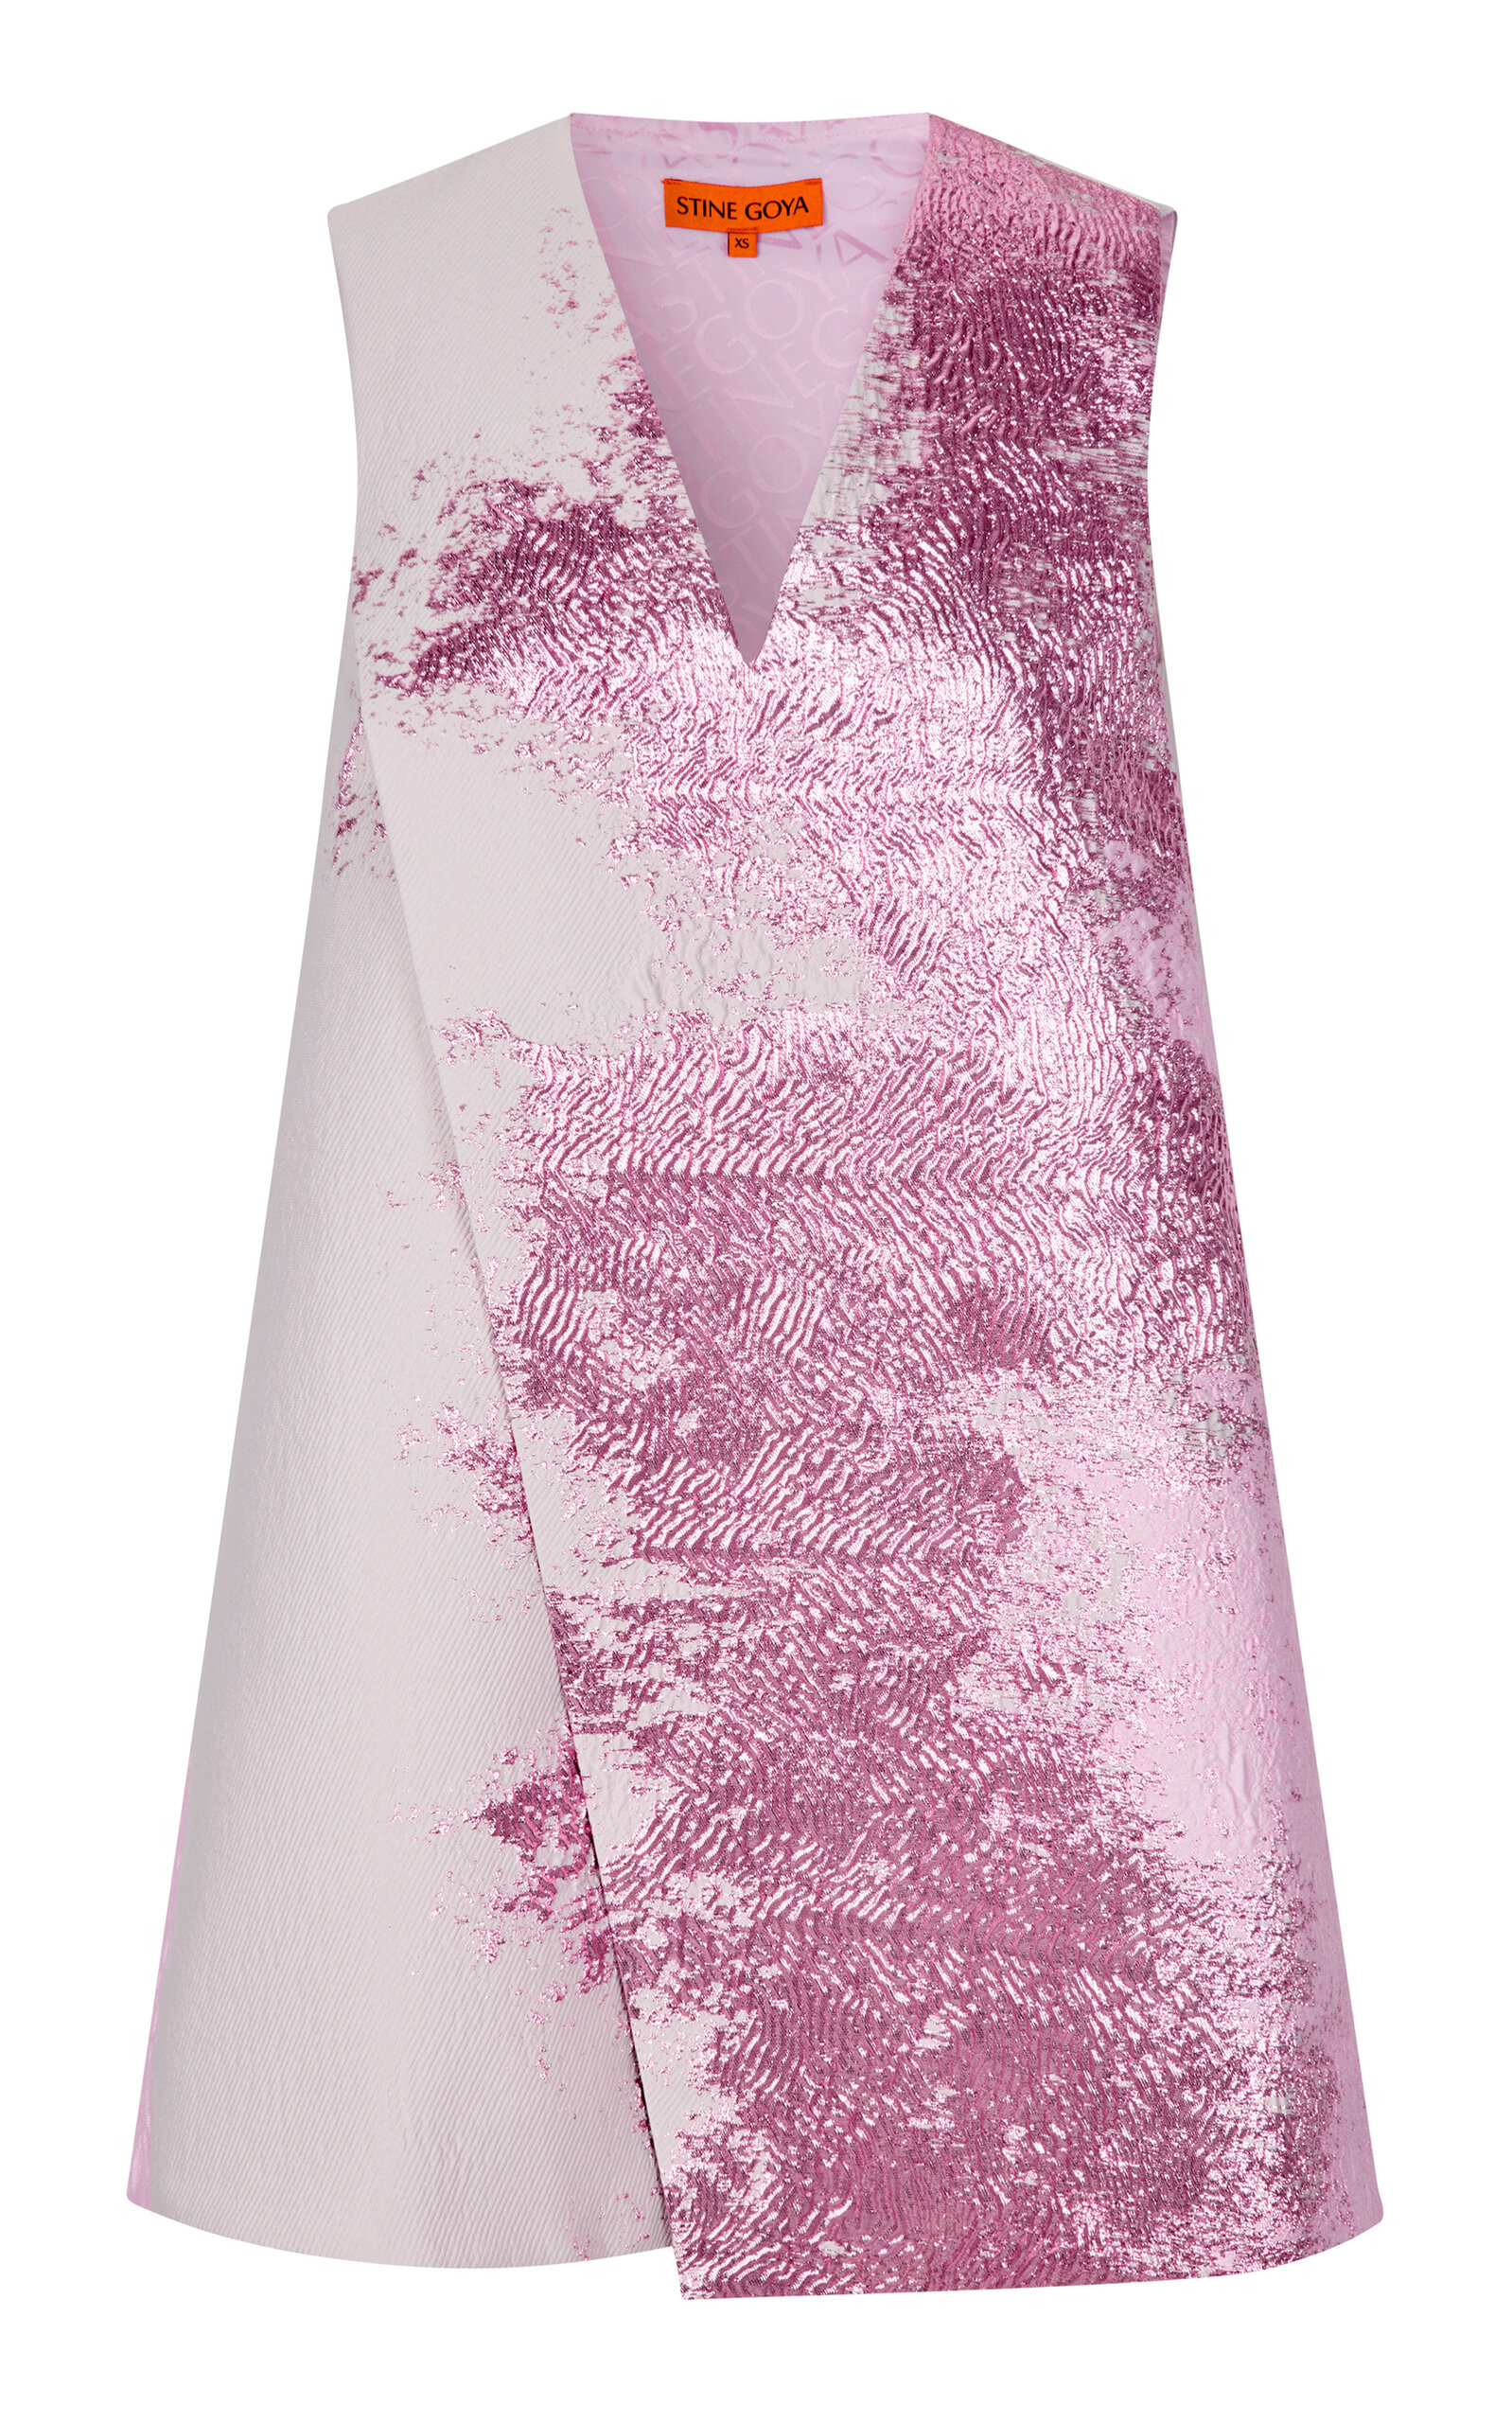 Stine Goya Tamar Mini Dress In Pink